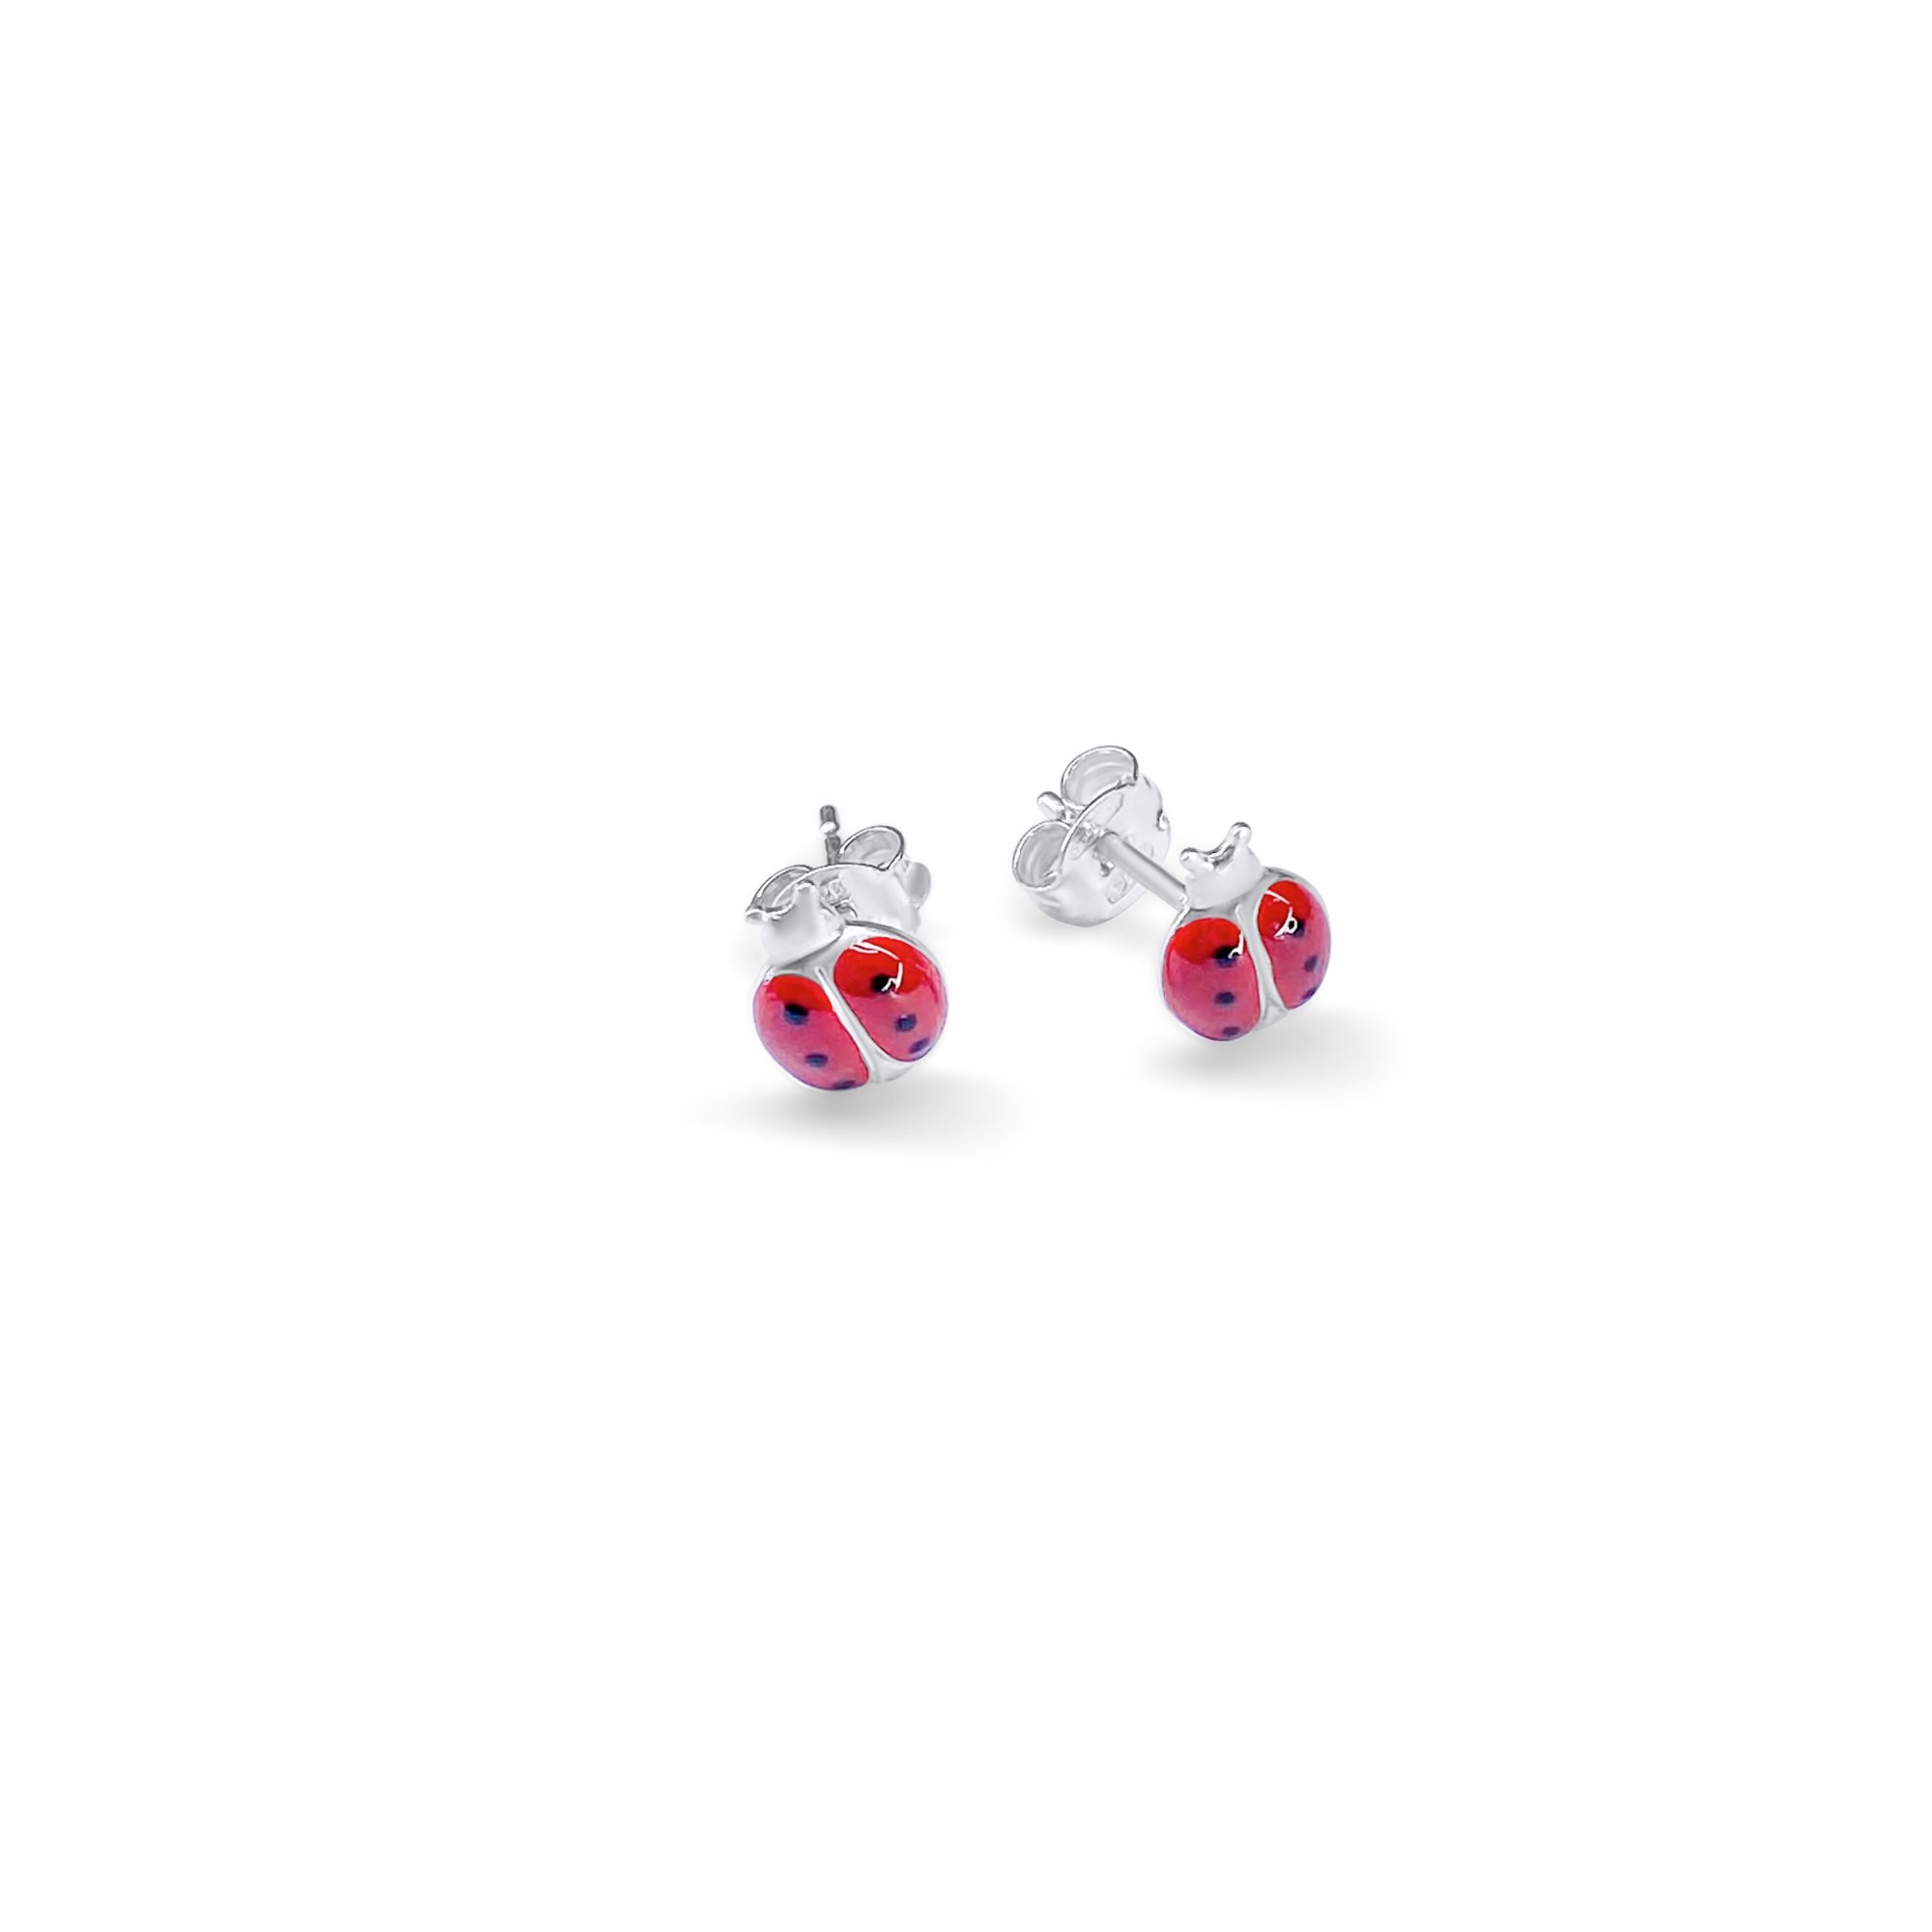 Ladybug stud earrings